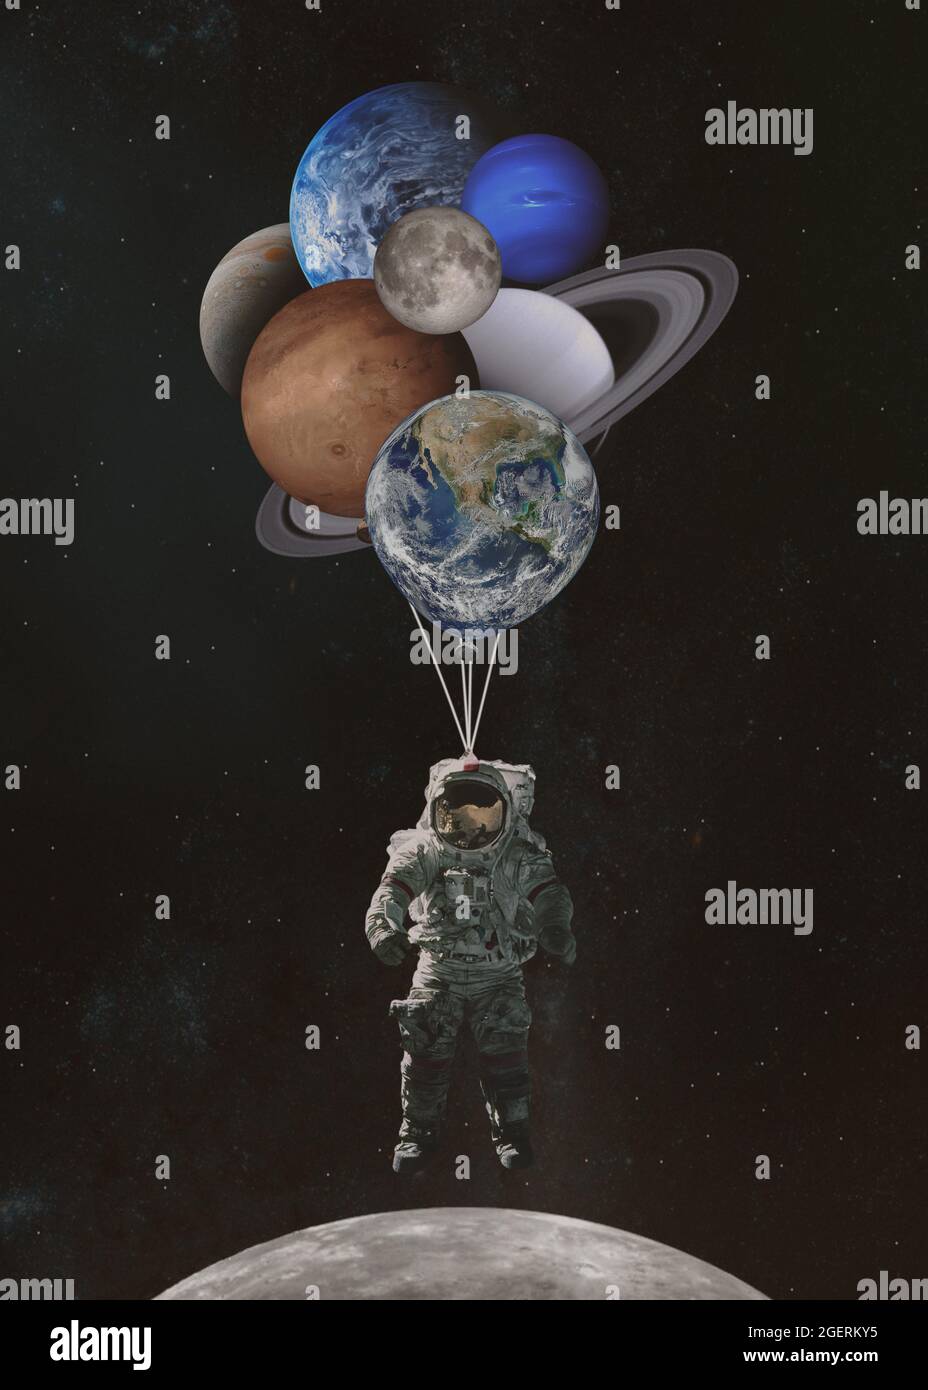 Astronaute de l'espace avec des ballons en forme de planètes dans le système solaire. Éléments de cette image fournis par la NASA. Banque D'Images